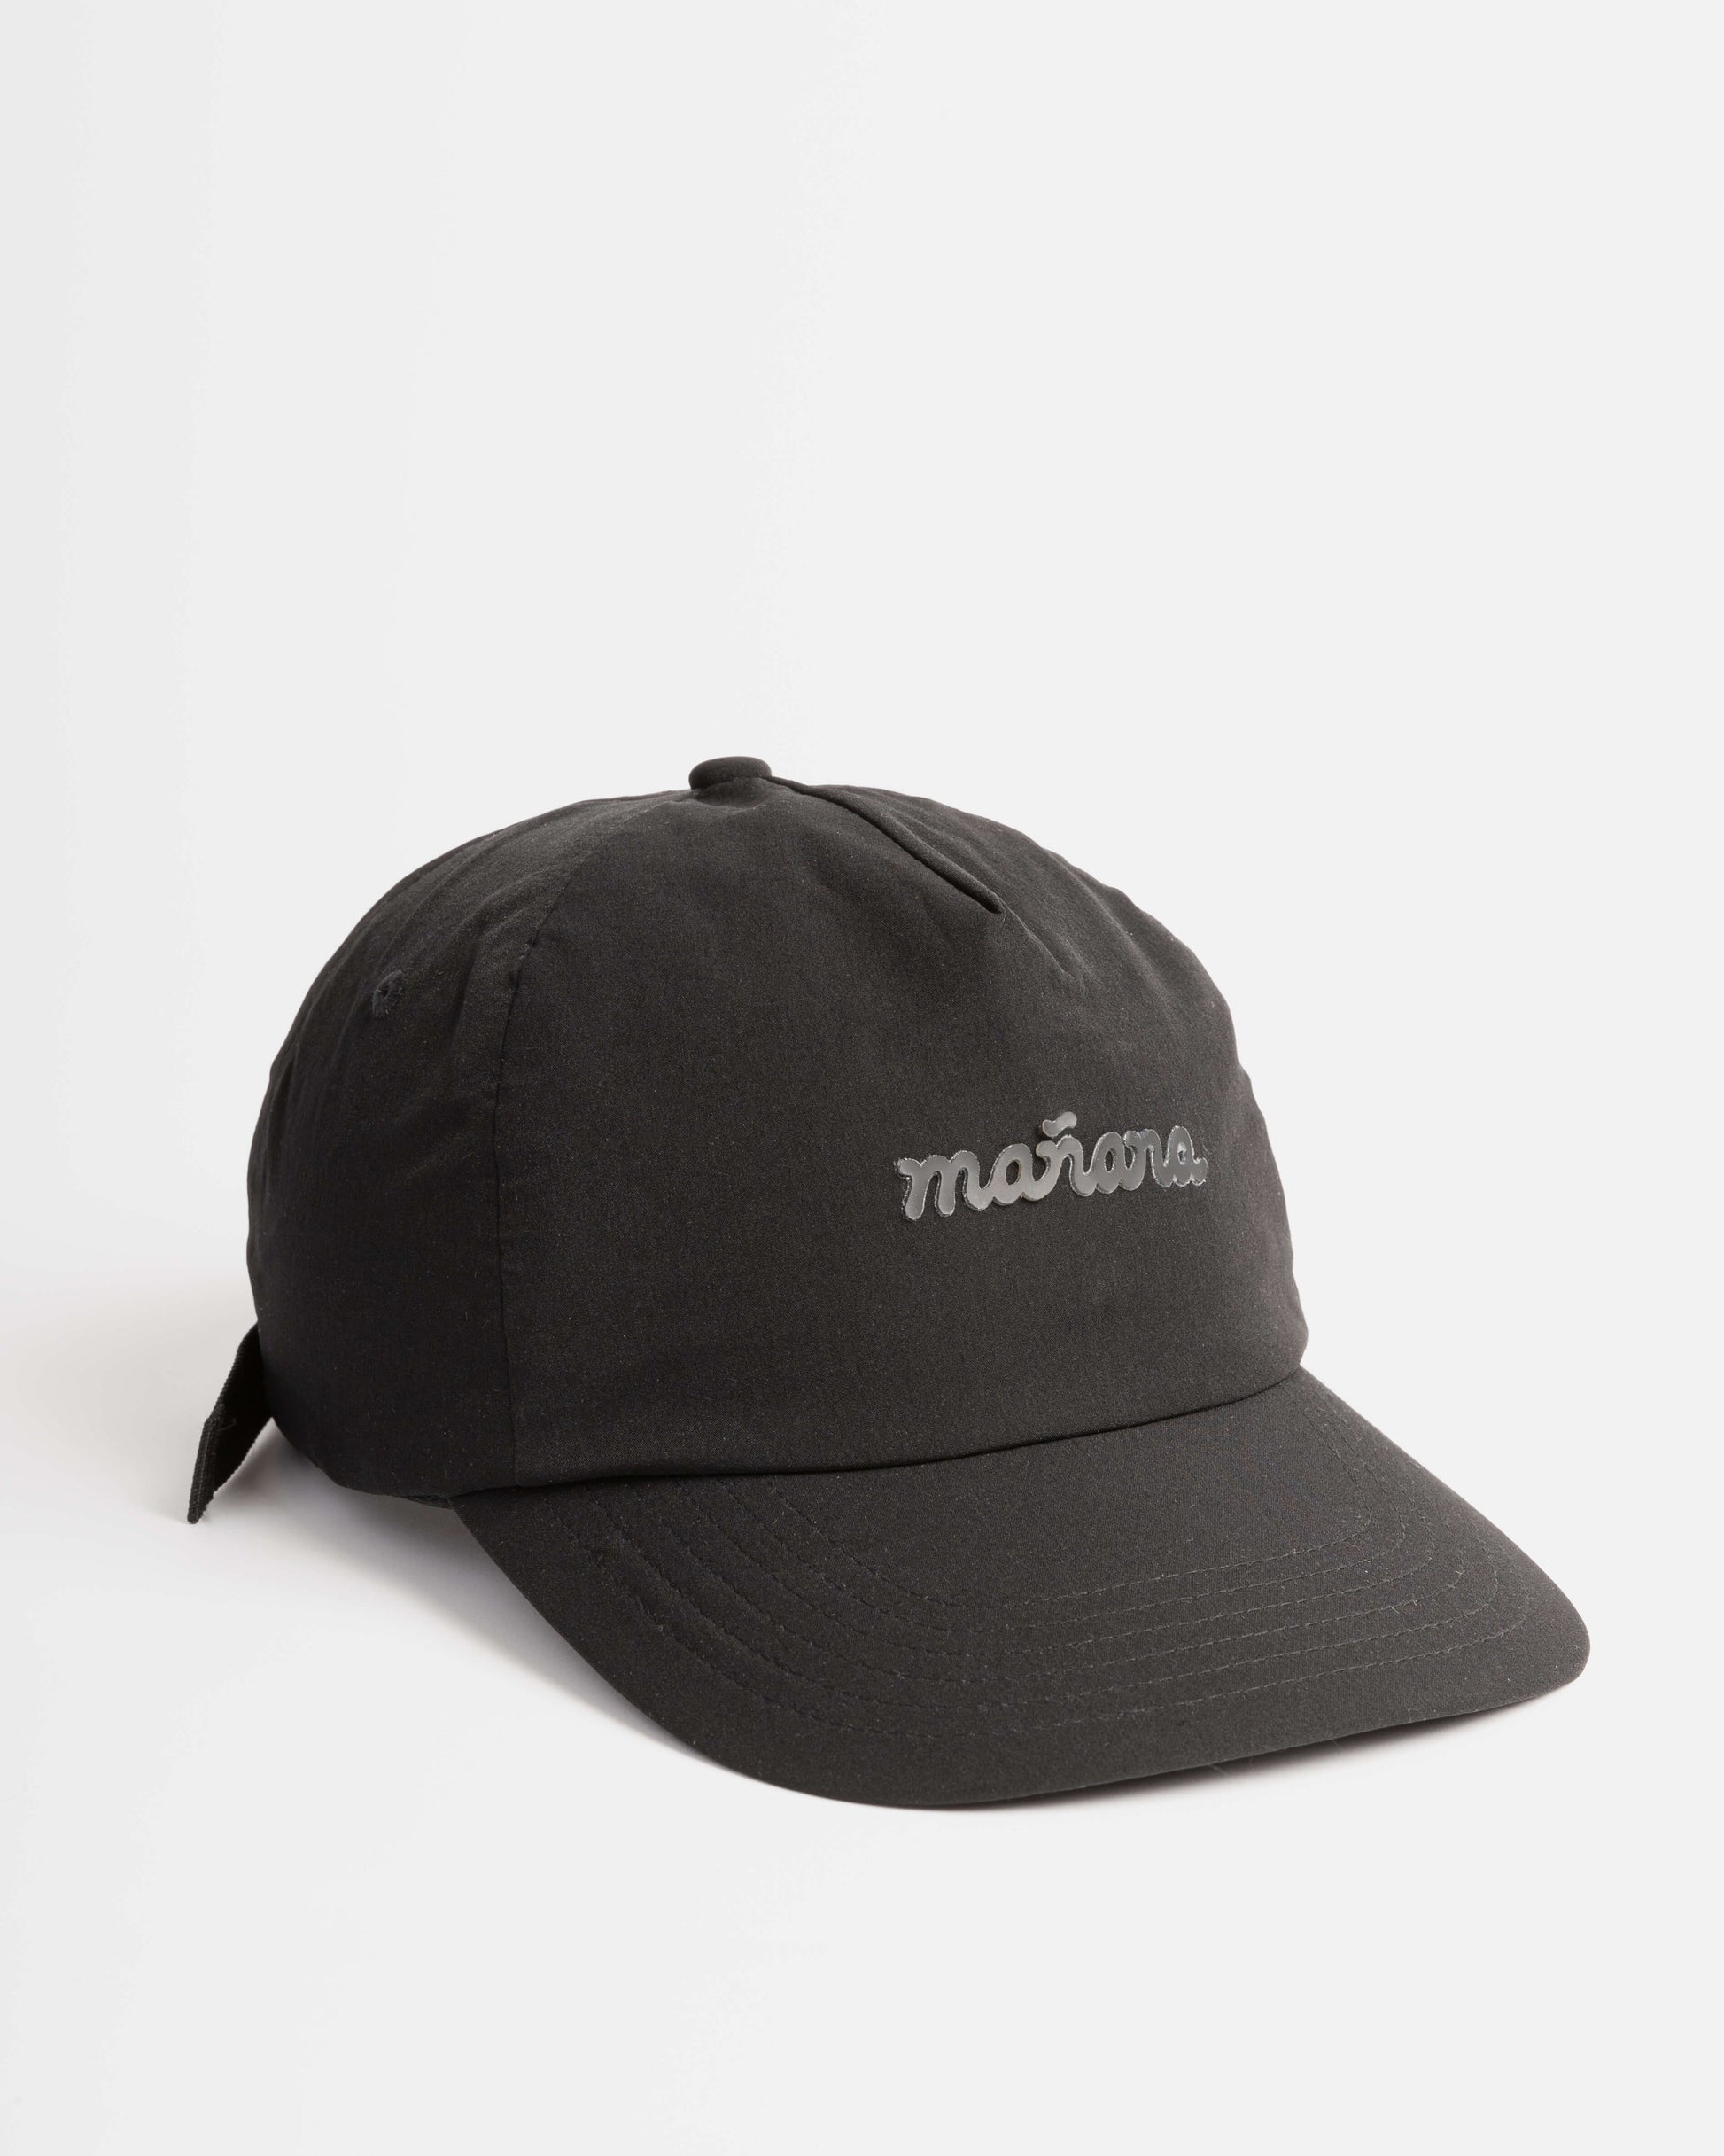 Black Travel Hat - Manana – Mañana